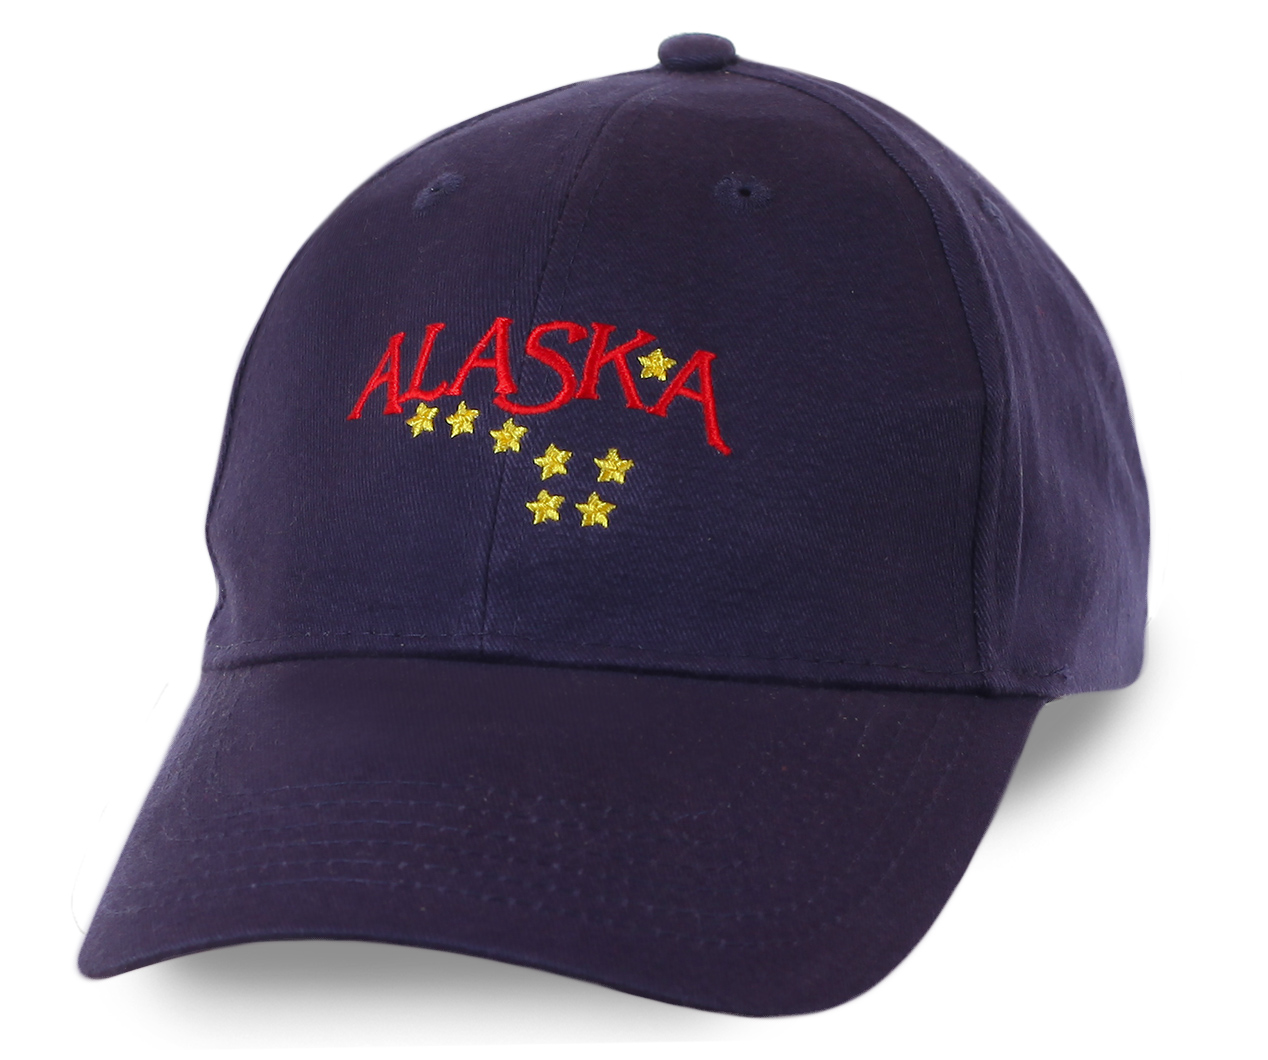 Строгая темно-синяя бейсболка Alaska с вышитыми звездами - безупречное качество №20234 ОСТАТКИ СЛАДКИ!!!!